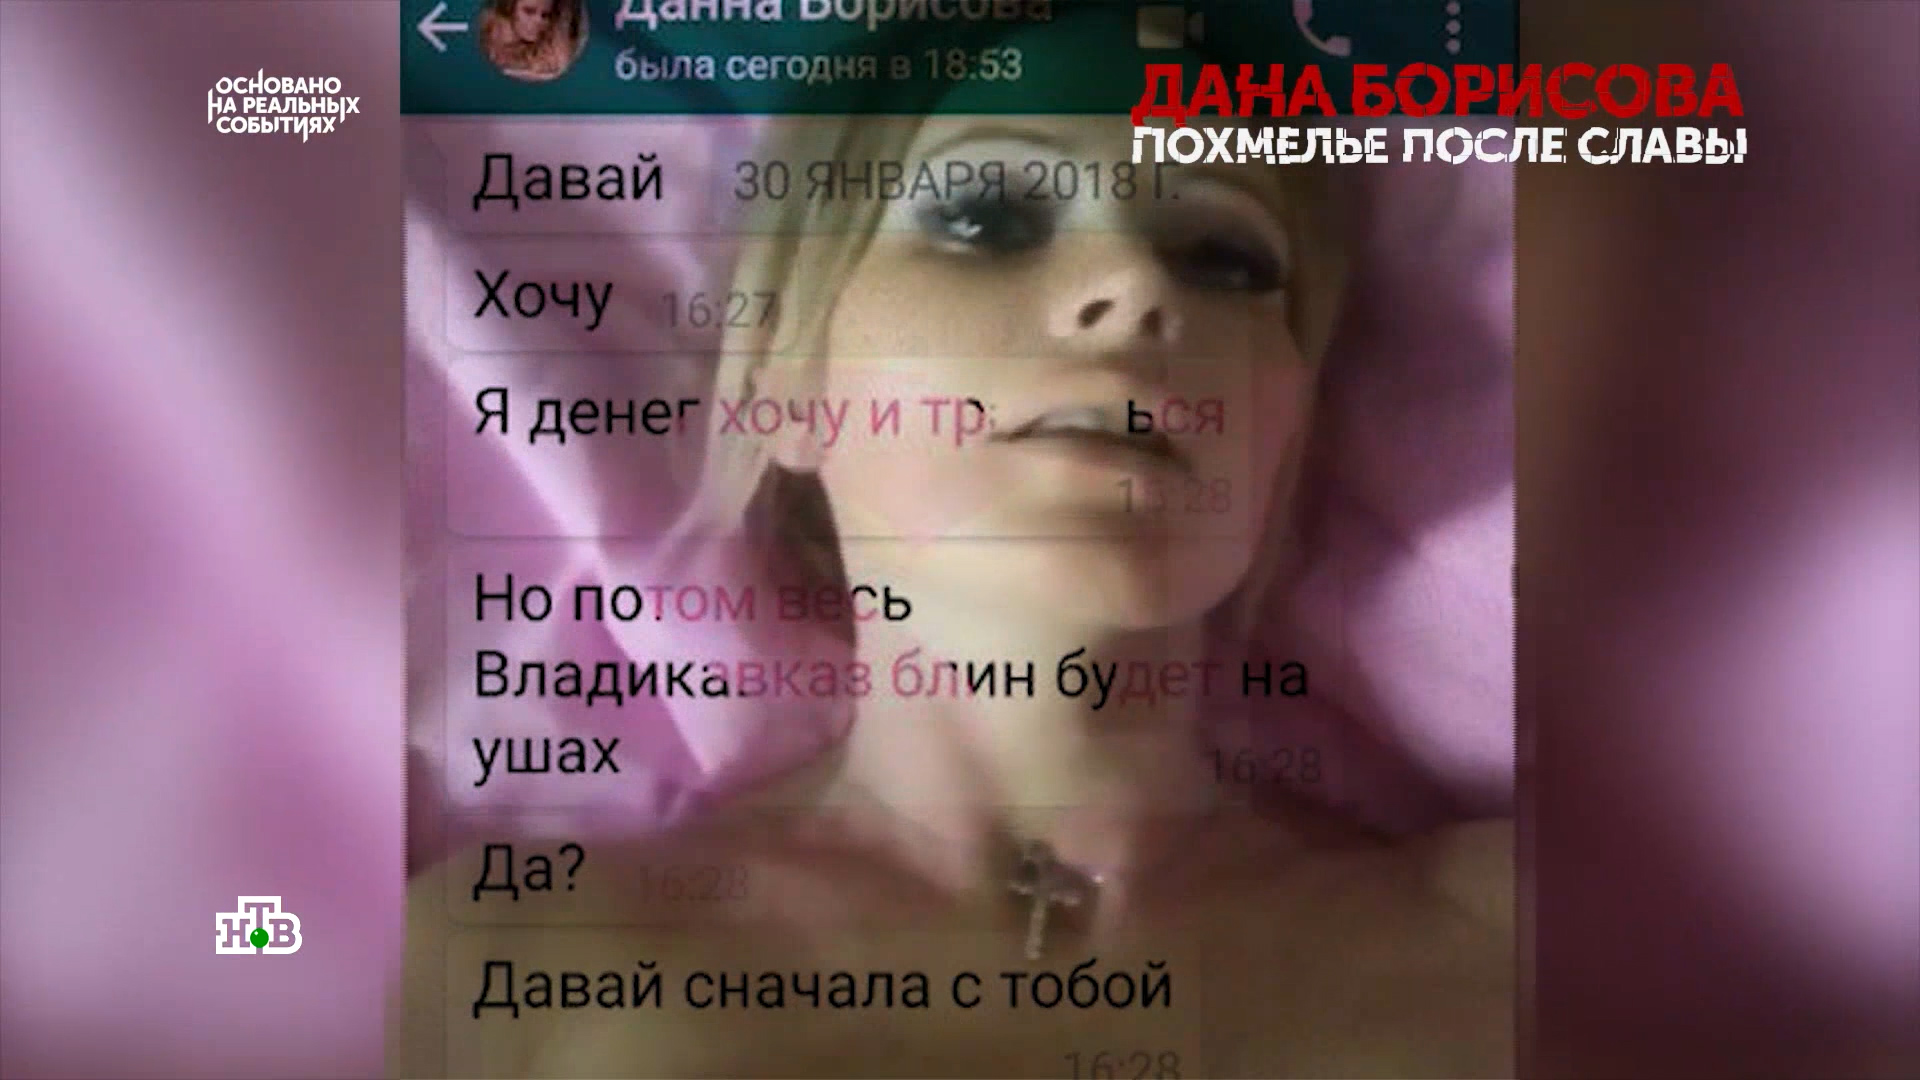 Интимное Порно Видео Даны Борисовой